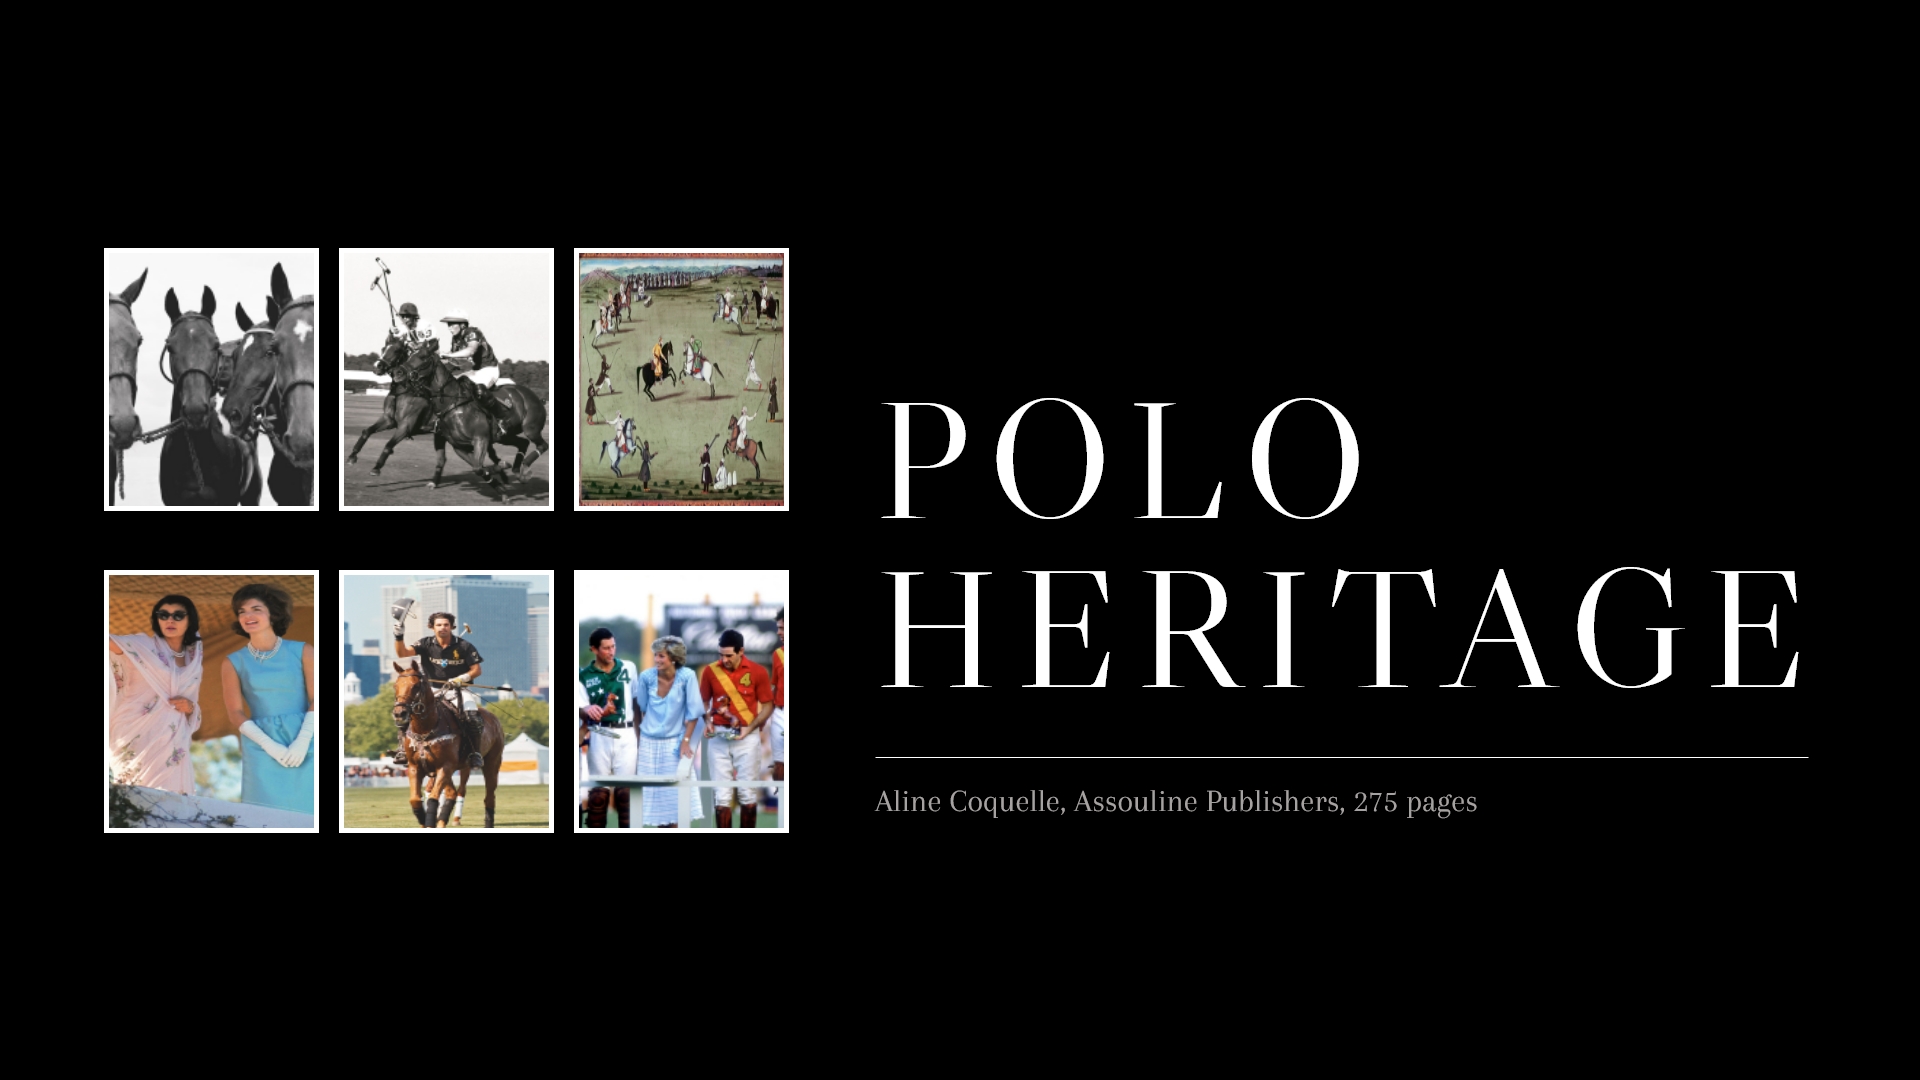 The past, present, and the futuristic sanctum of Polo.